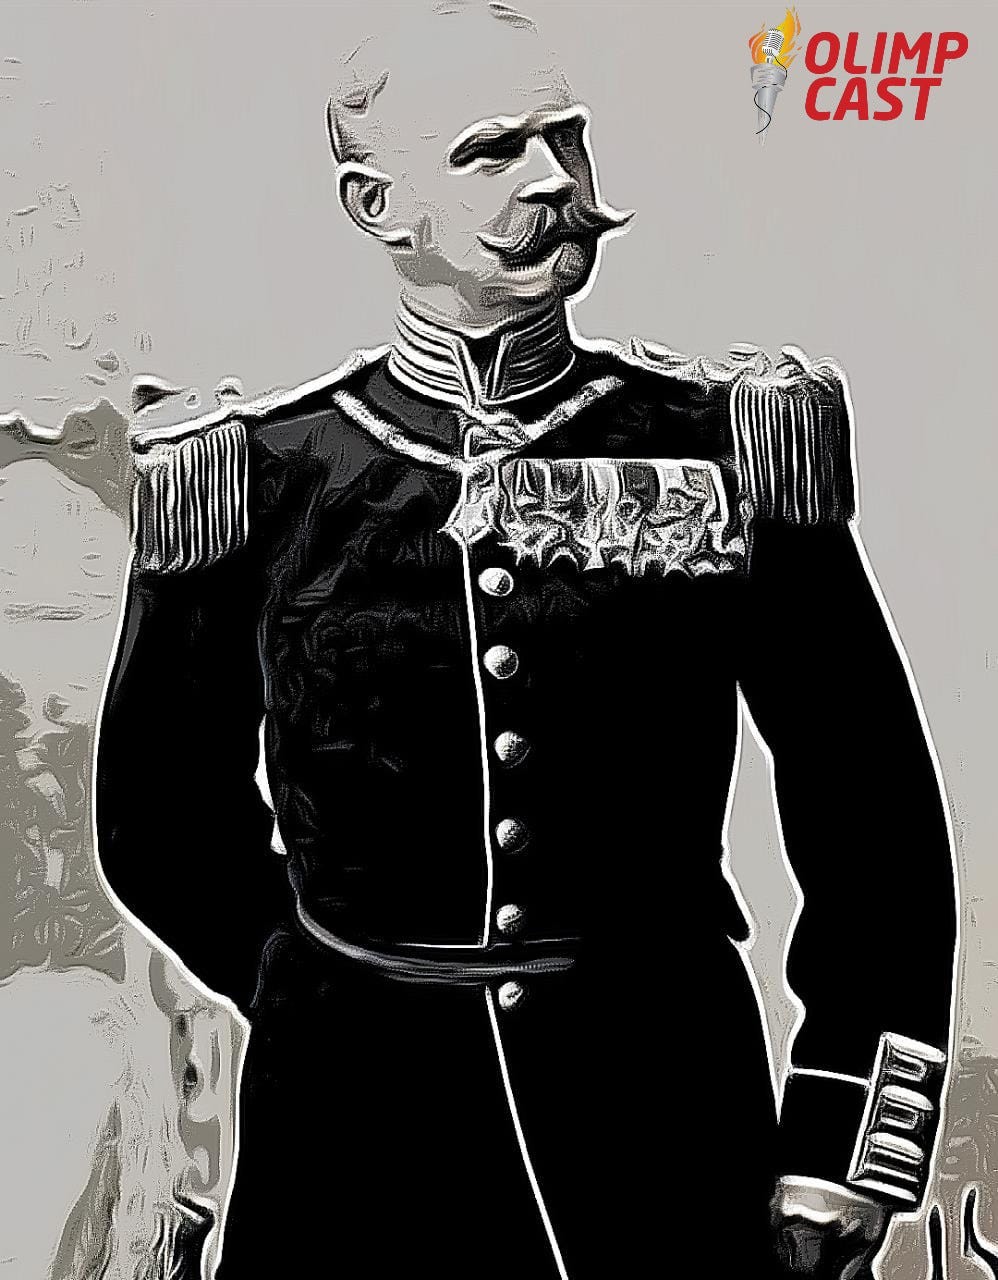 Imagem de Gustav Balck, militar sueco considerado o pai dos Jogos de Inverno. É um senhor de idade, calvo, com espesso bigode branco, vestindo um uniforme militar preto com botões e medalhas no peito, do lado esquerdo. Imagem é em preto e branco.